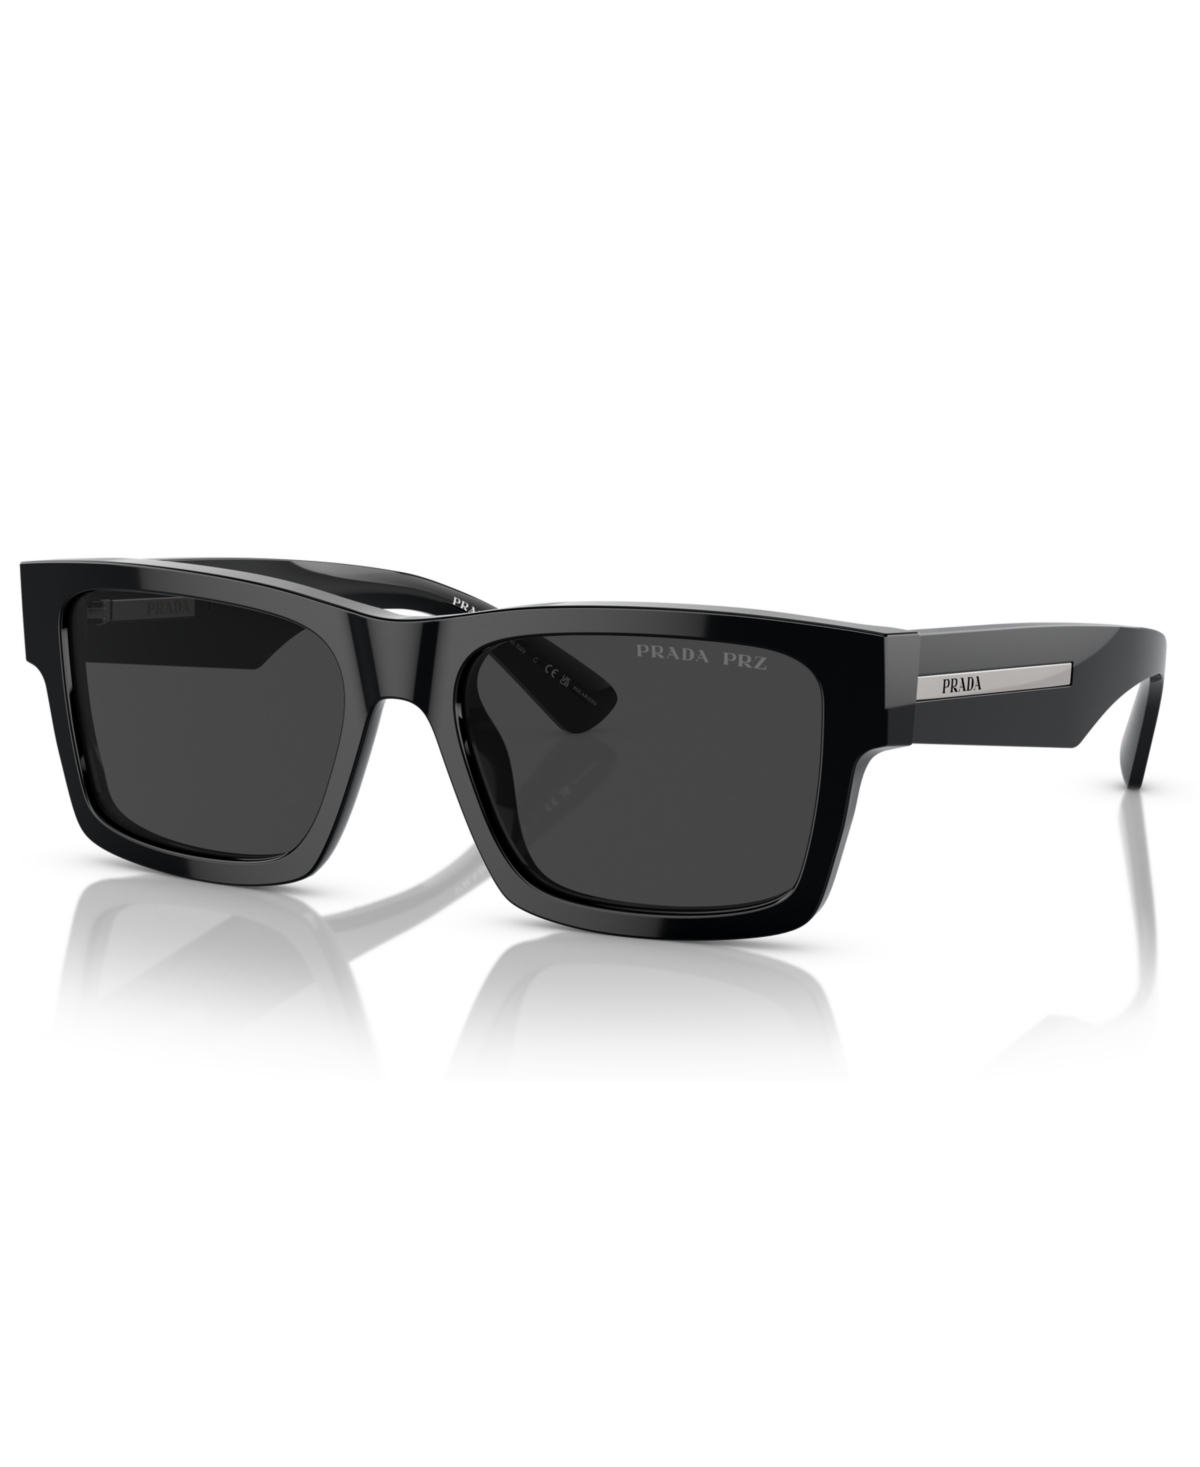 Prada Men's Polarized Sunglasses, Pr 25zs In Black